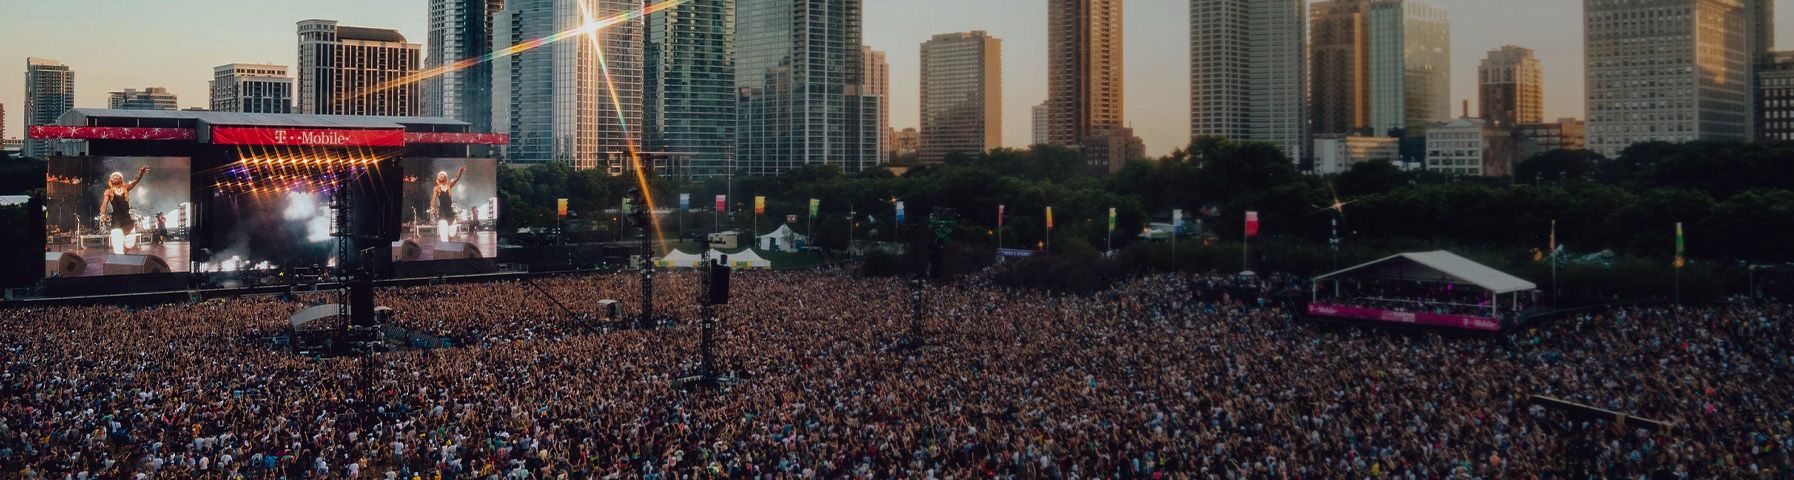 Una gran multitud en un festival de música.